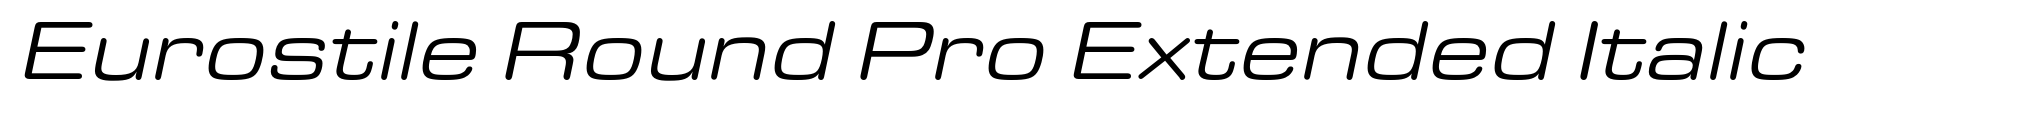 Eurostile Round Pro Extended Italic image